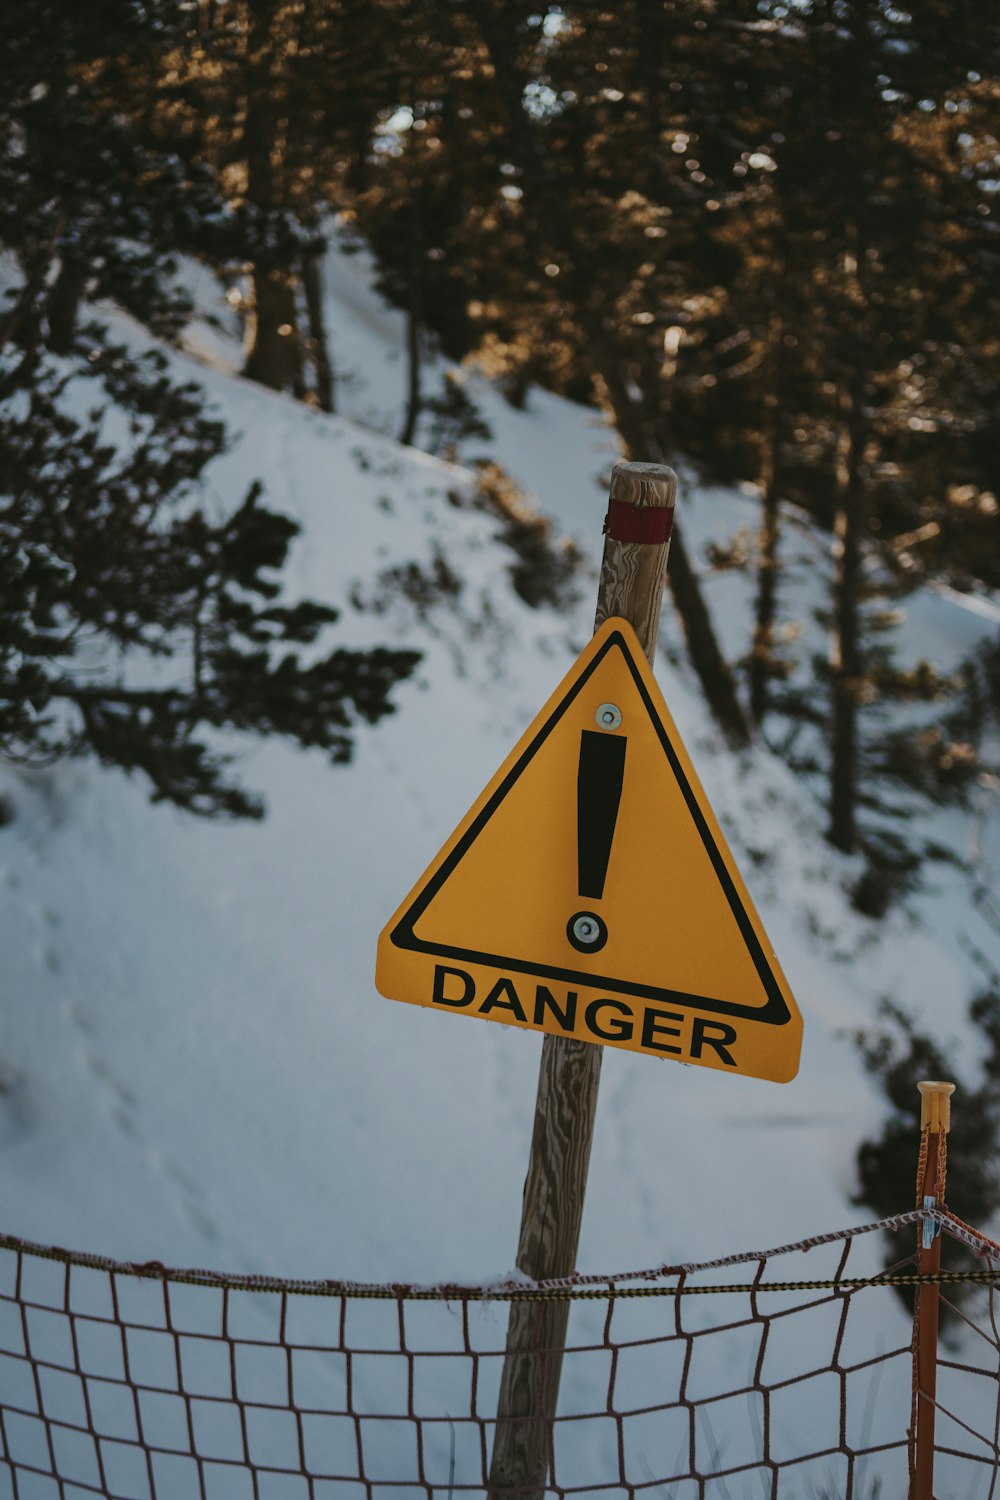 Una señal de advertencia en un poste de la cerca en la nieve